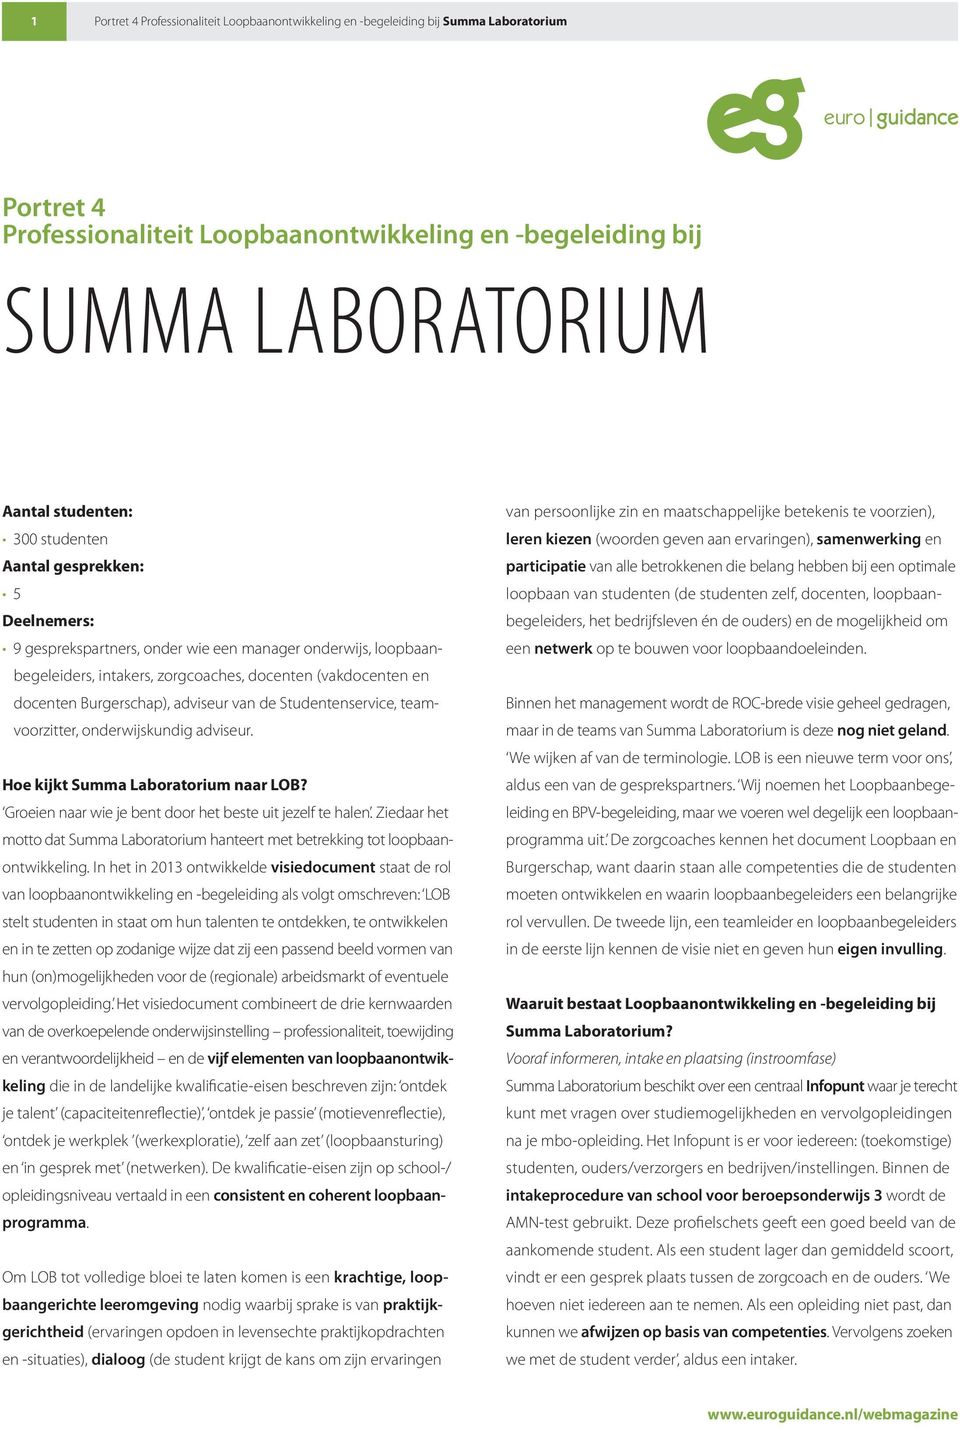 Hoe kijkt Summa Laboratorium naar LOB? Groeien naar wie je bent door het beste uit jezelf te halen. Ziedaar het motto dat Summa Laboratorium hanteert met betrekking tot loopbaanontwikkeling.